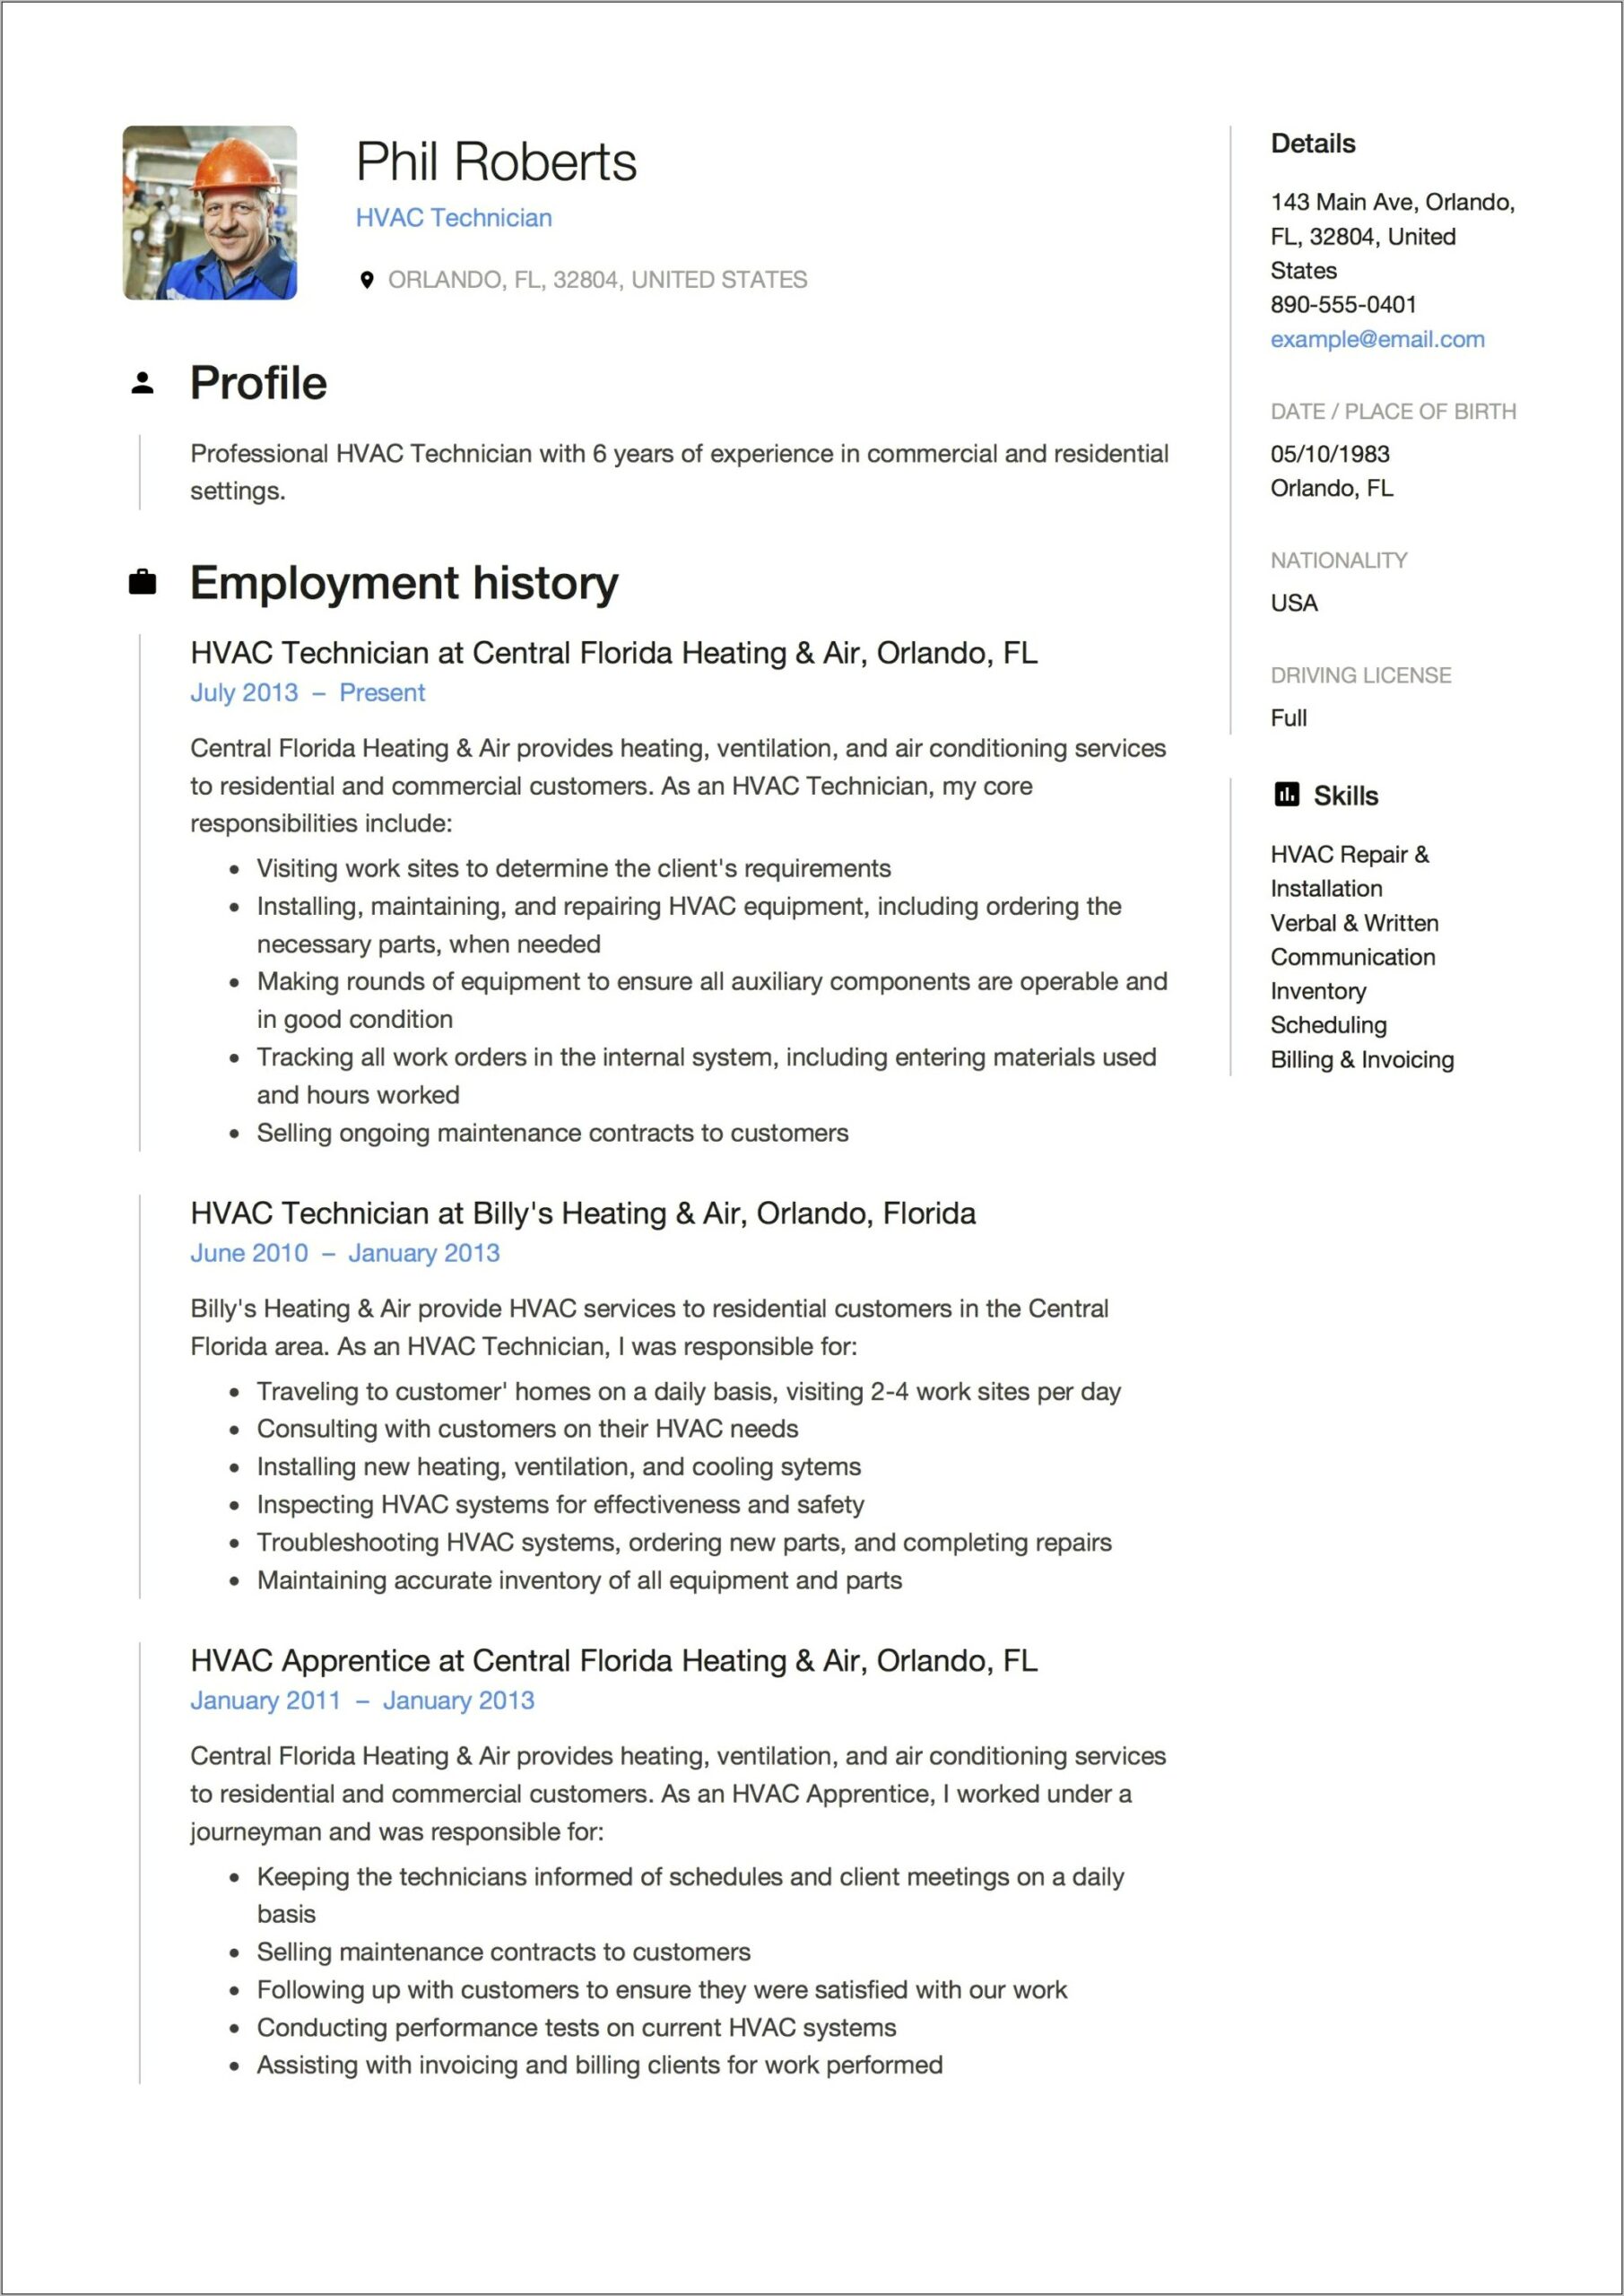 Journeyman Plumber Job Description For Resume